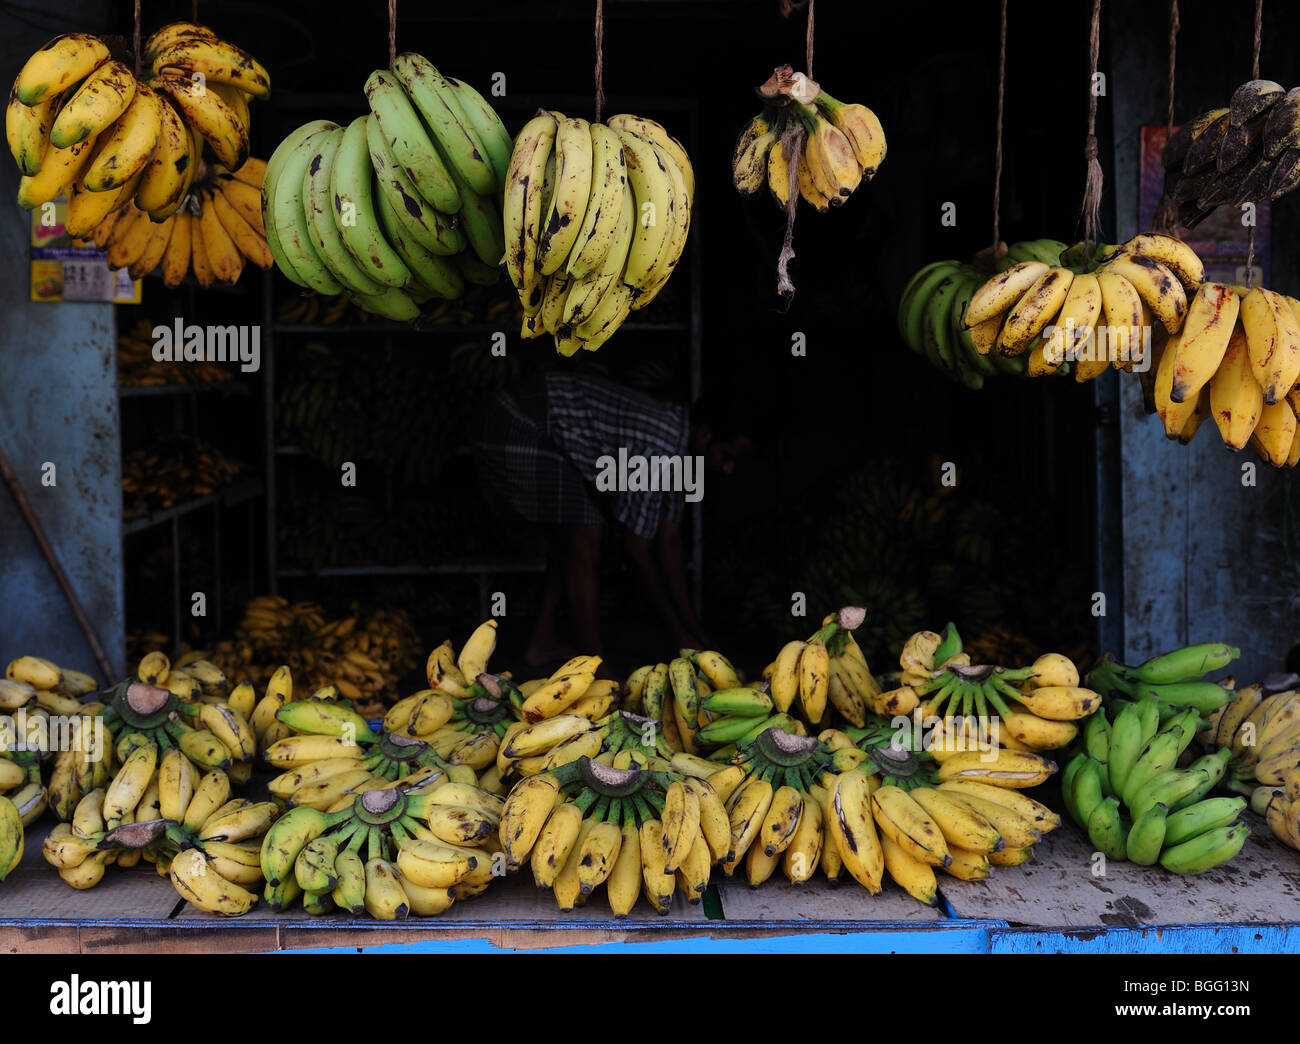 Banana shop, India Stock Photo